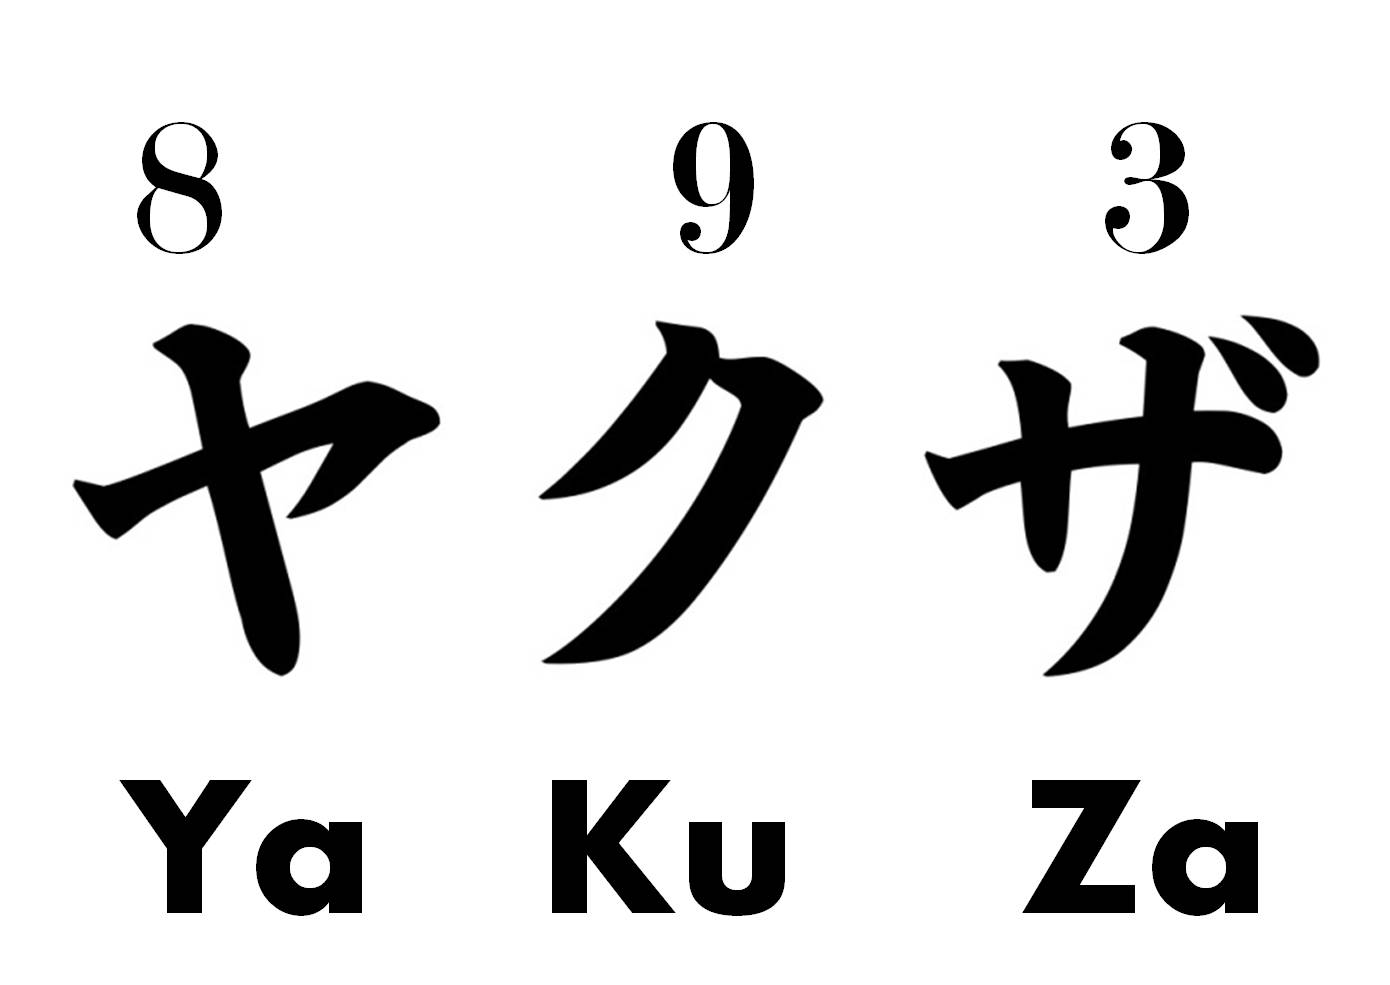 yakuza_numbers_893_explained